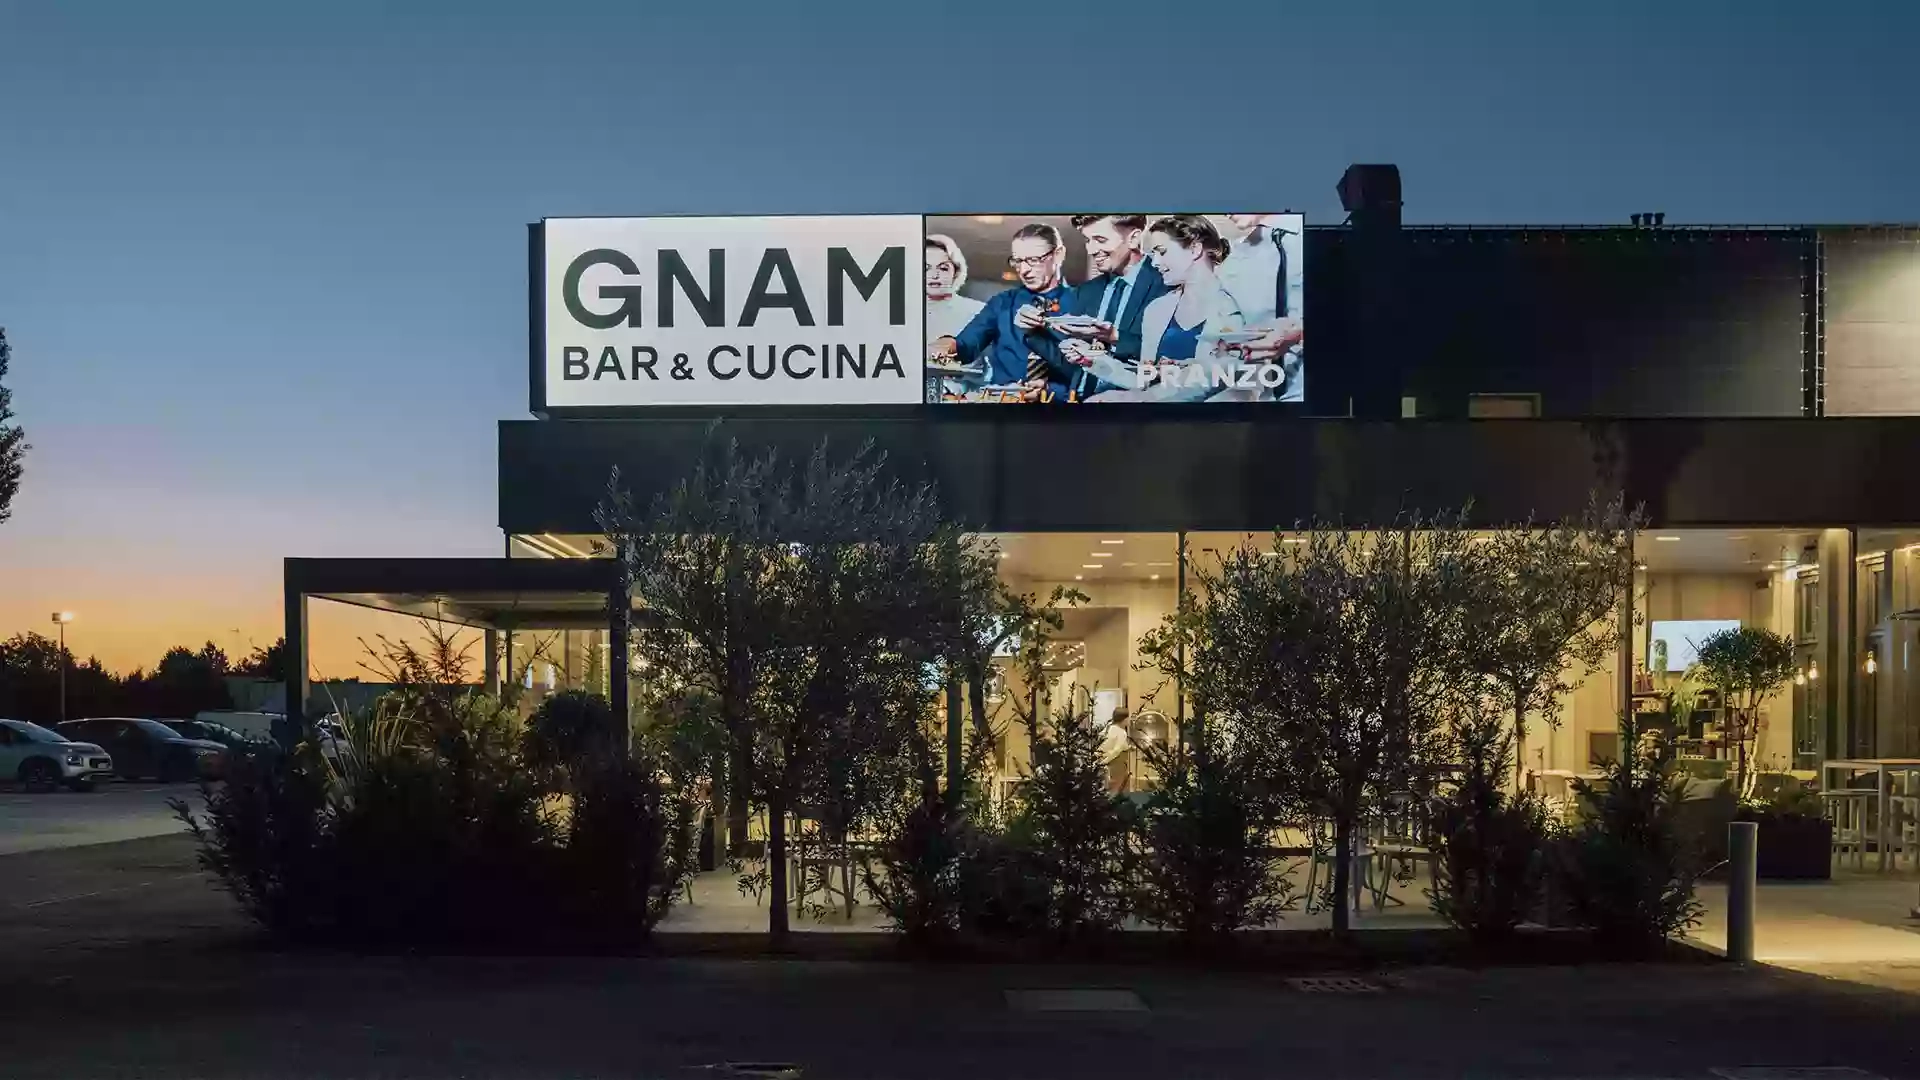 Gnam - Bar & Cucina